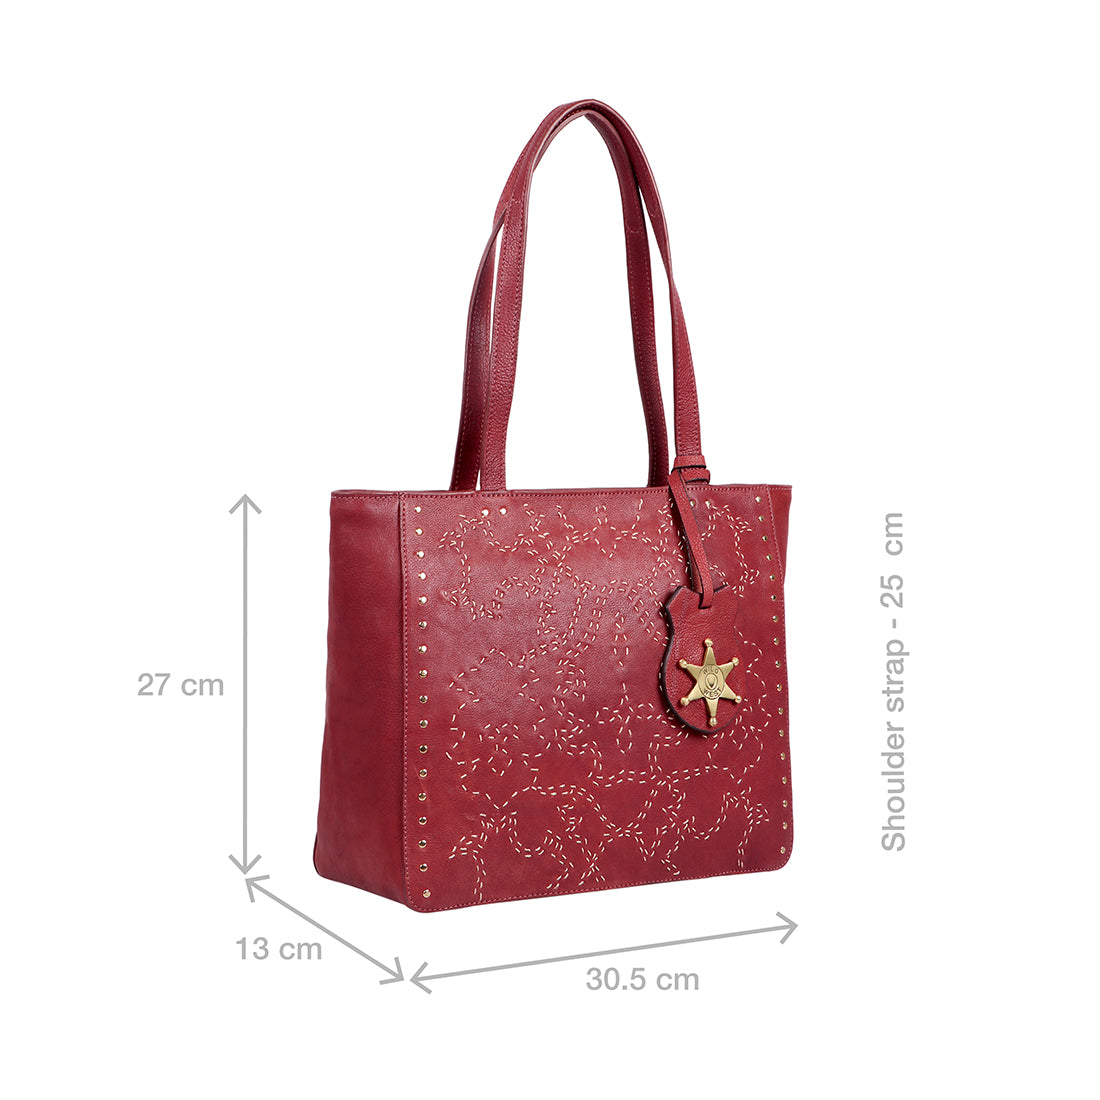 Hidesign Marsala Zazen 04 Red Solid Medium Shoulder Handbag